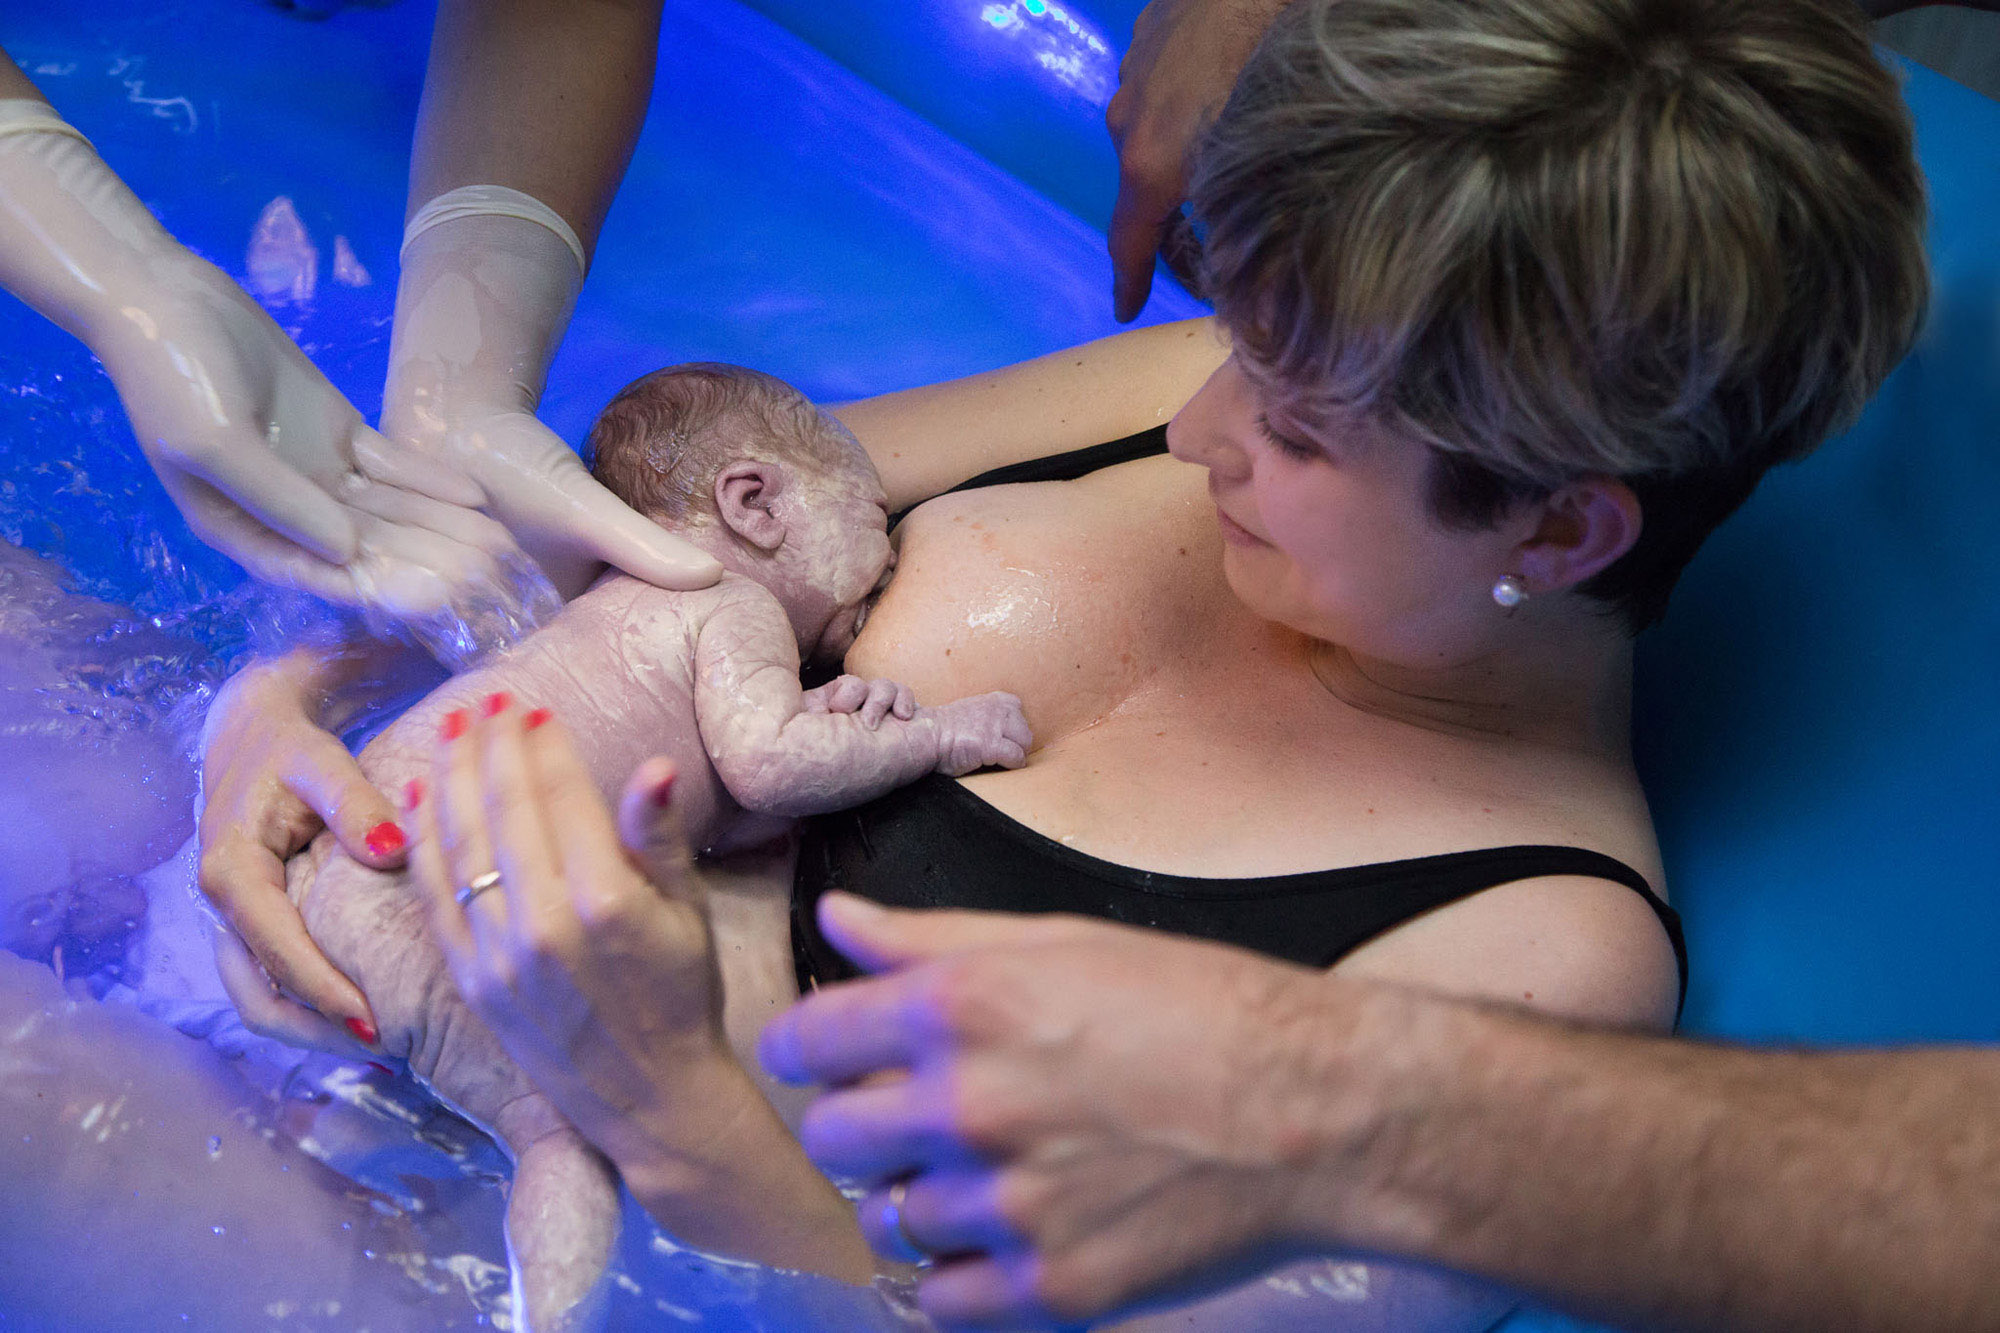 una bimba appena nata con un parto in acqua si attacca al seno della mamma